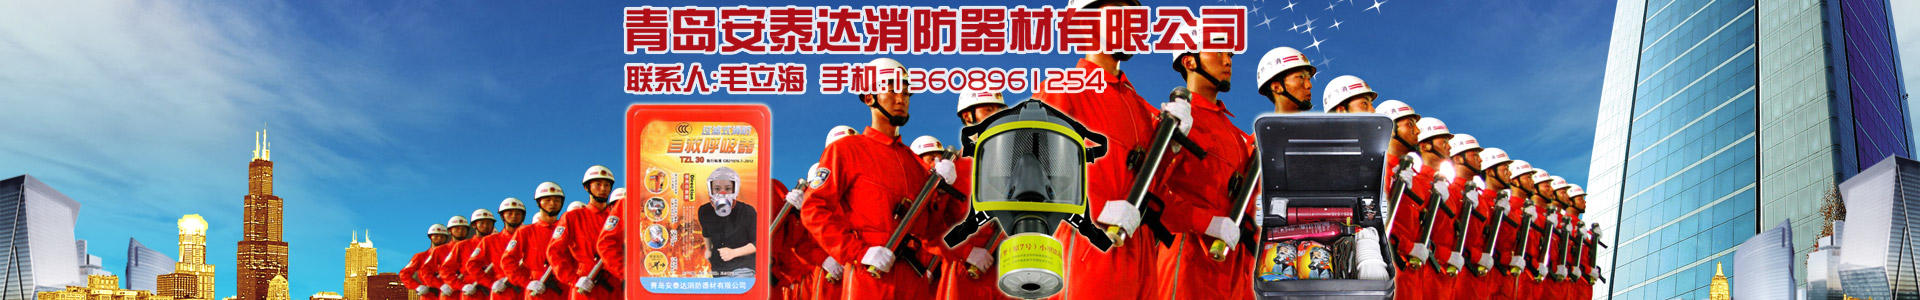 22马力消防泵-消防泵系列-青岛安泰达消防器材有限公司-